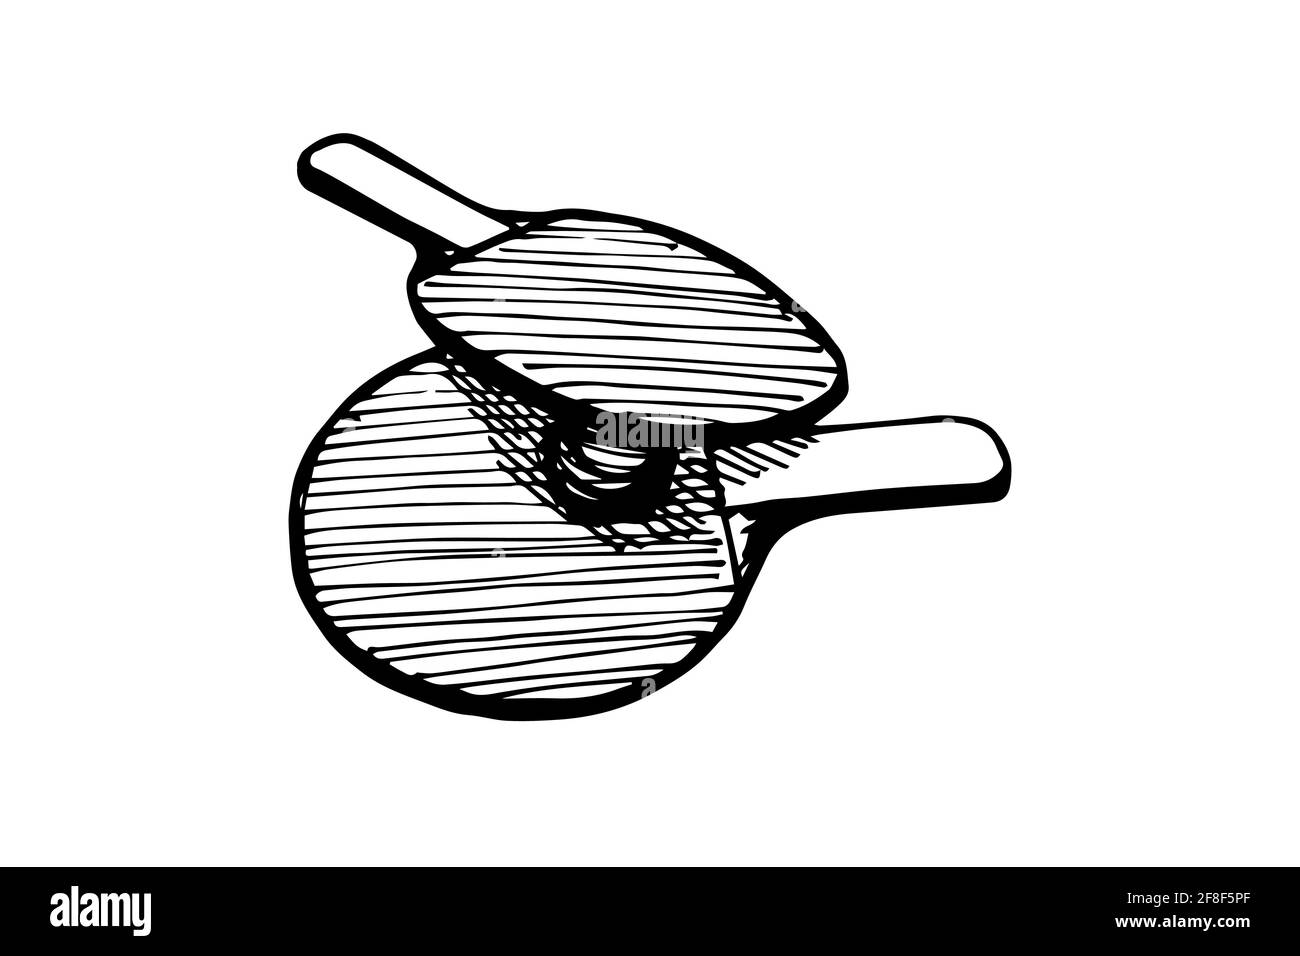 Icône représentant un contour de raquettes de ping-pong et de balle dessinées à la main.Équipement de tennis de table.Concept du logo des pagaies de jeu de ping-pong.Vector eps encre noire Doodle illustration isolée sur fond blanc Illustration de Vecteur